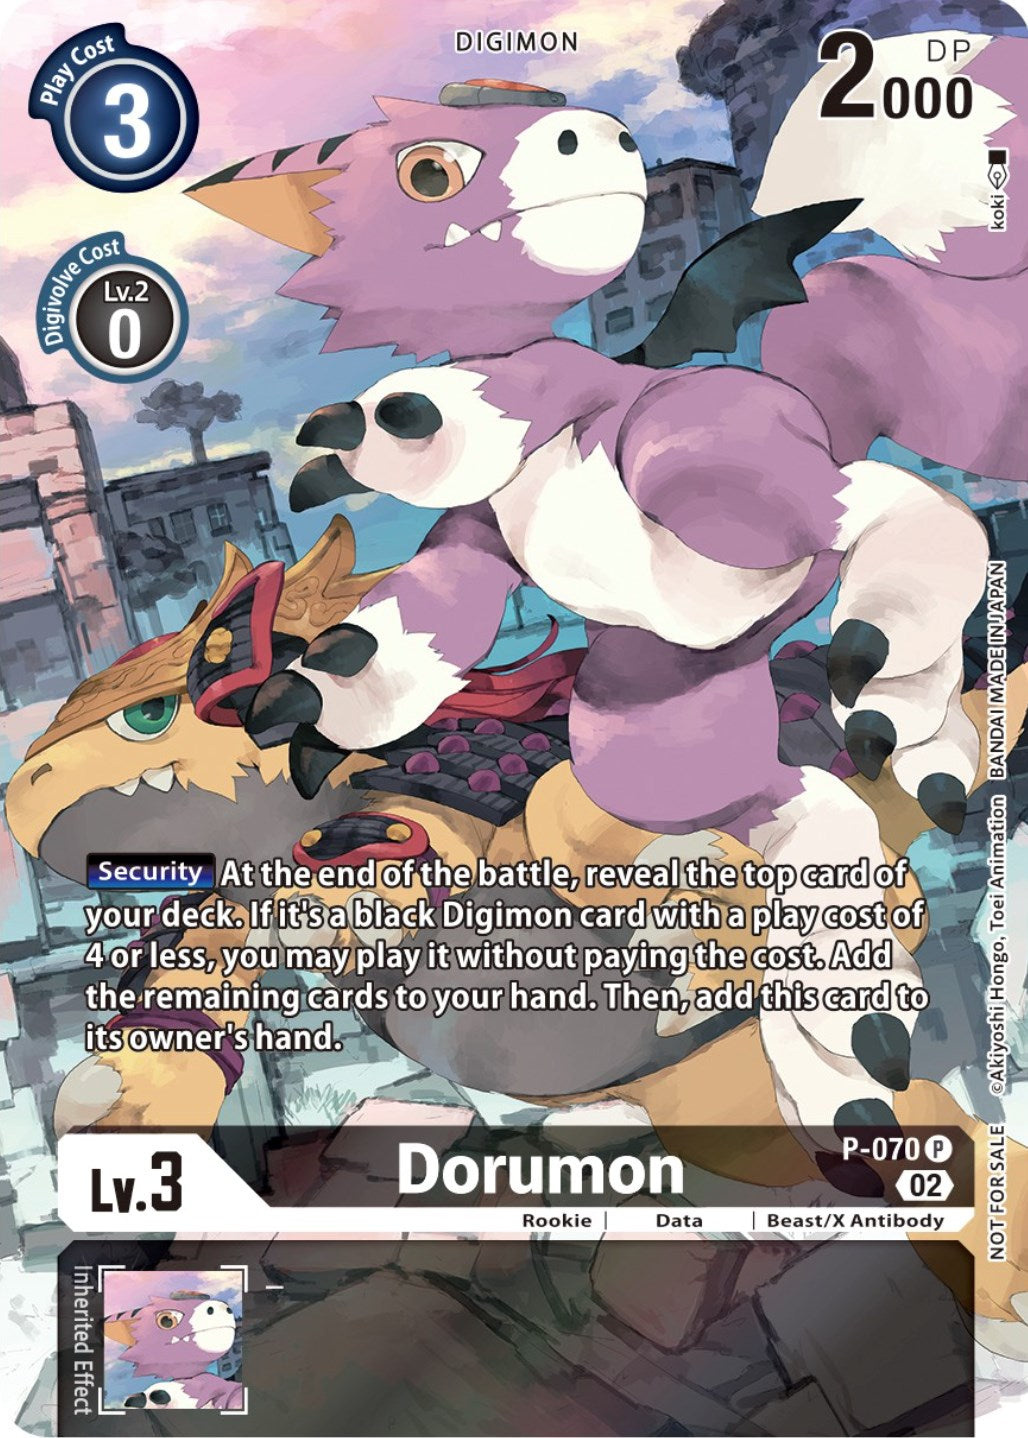 Dorumon [P-070] (Official Tournament Pack Vol. 10) [Promotional Cards] | Devastation Store